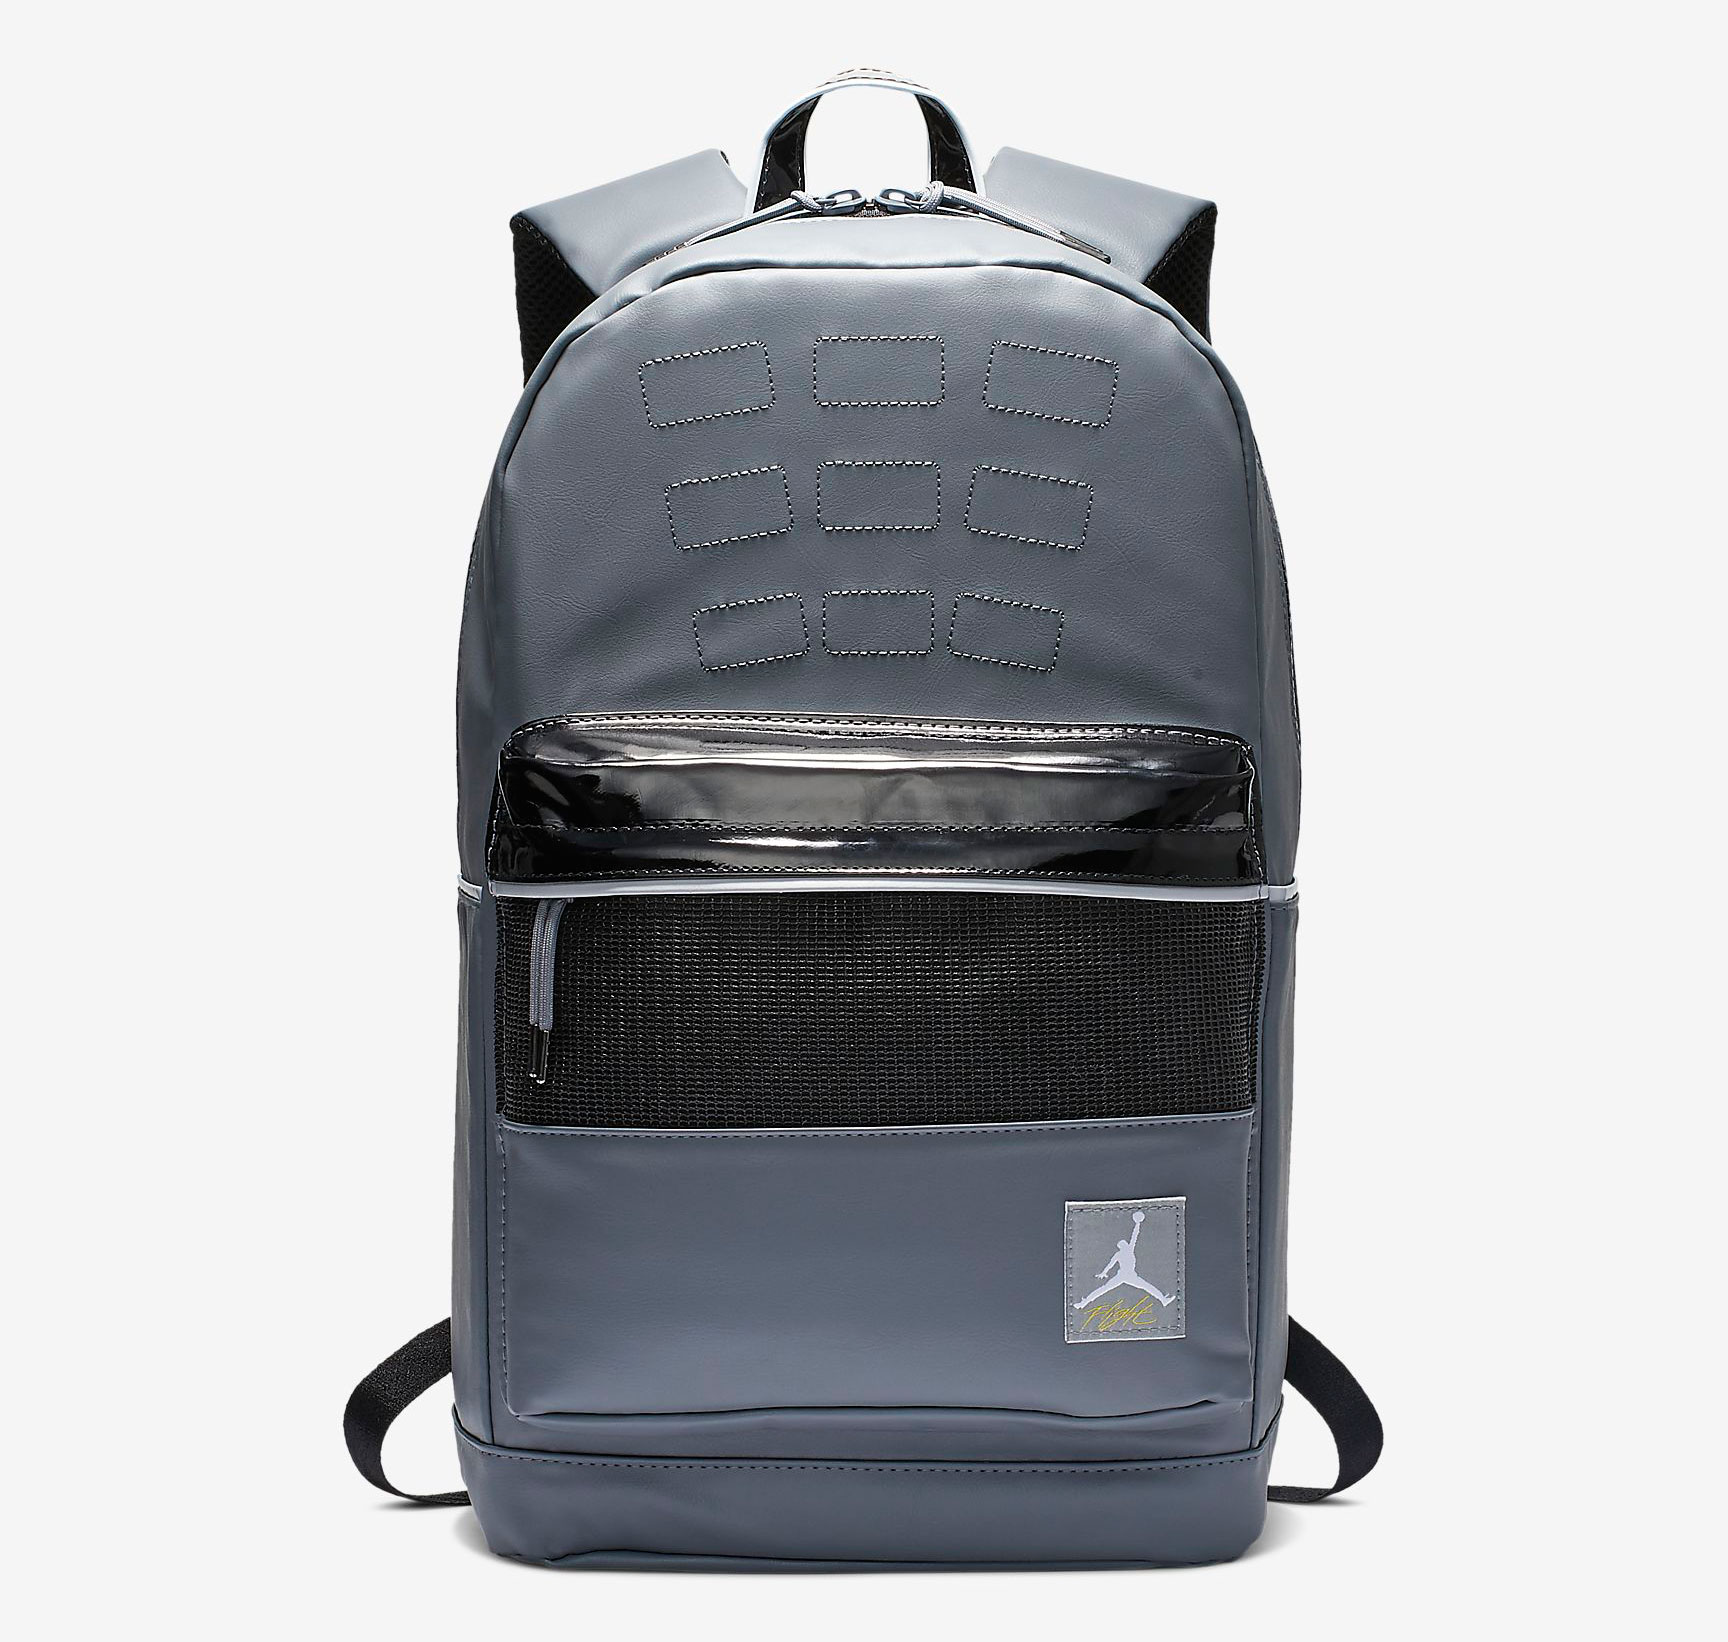 jordan backpack grey